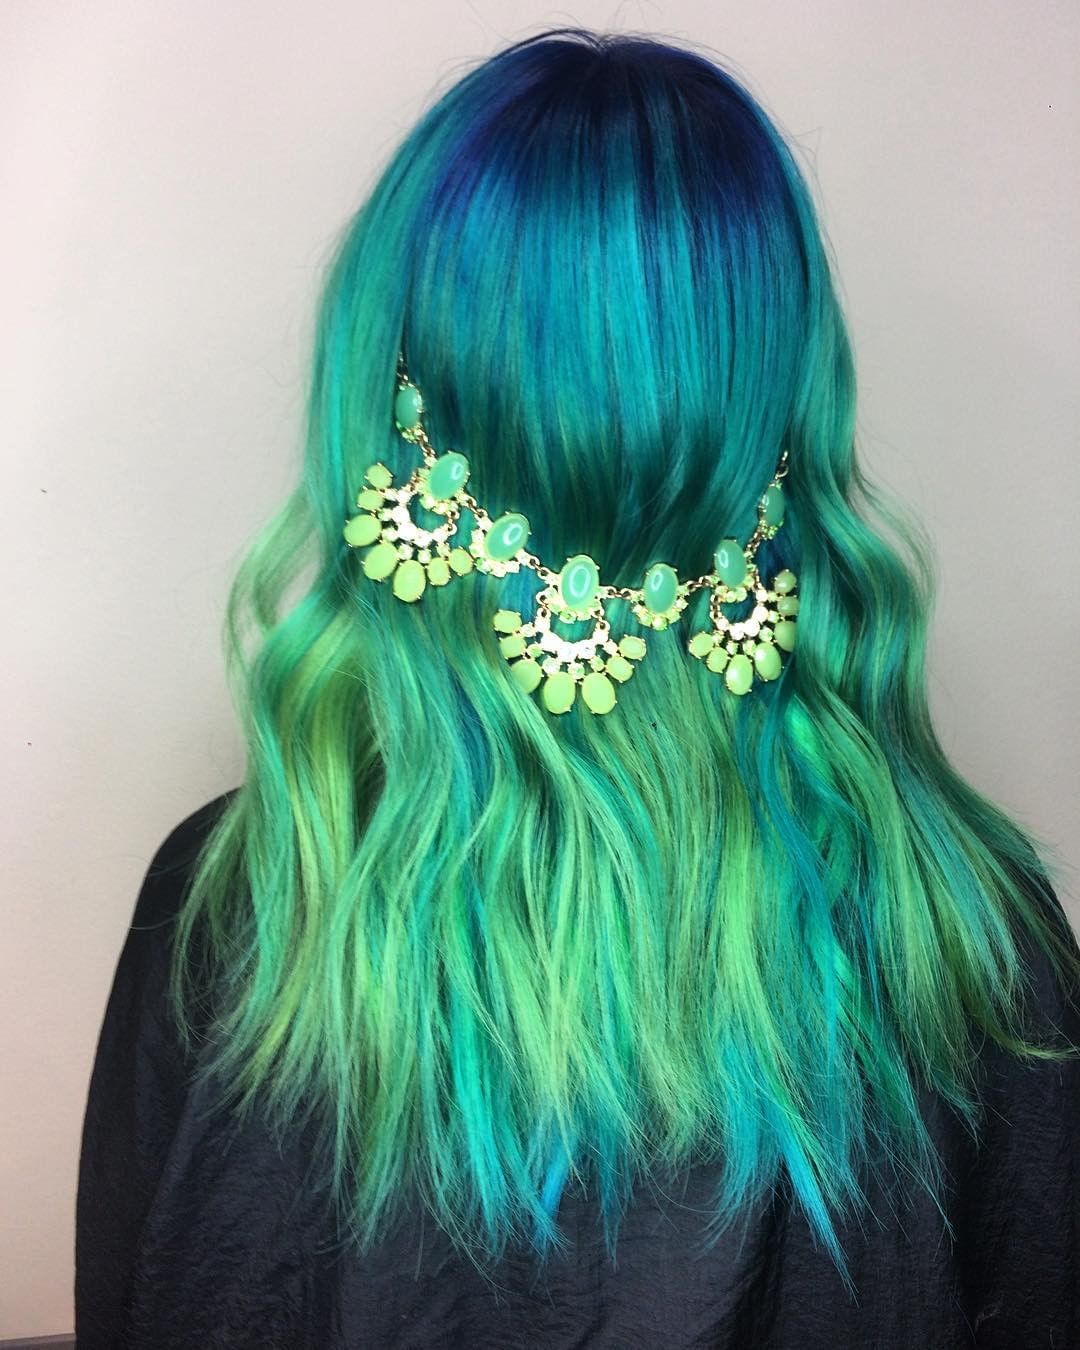 19 kiểu tóc màu xanh rêu phá cách cho bạn nổi bật hơn